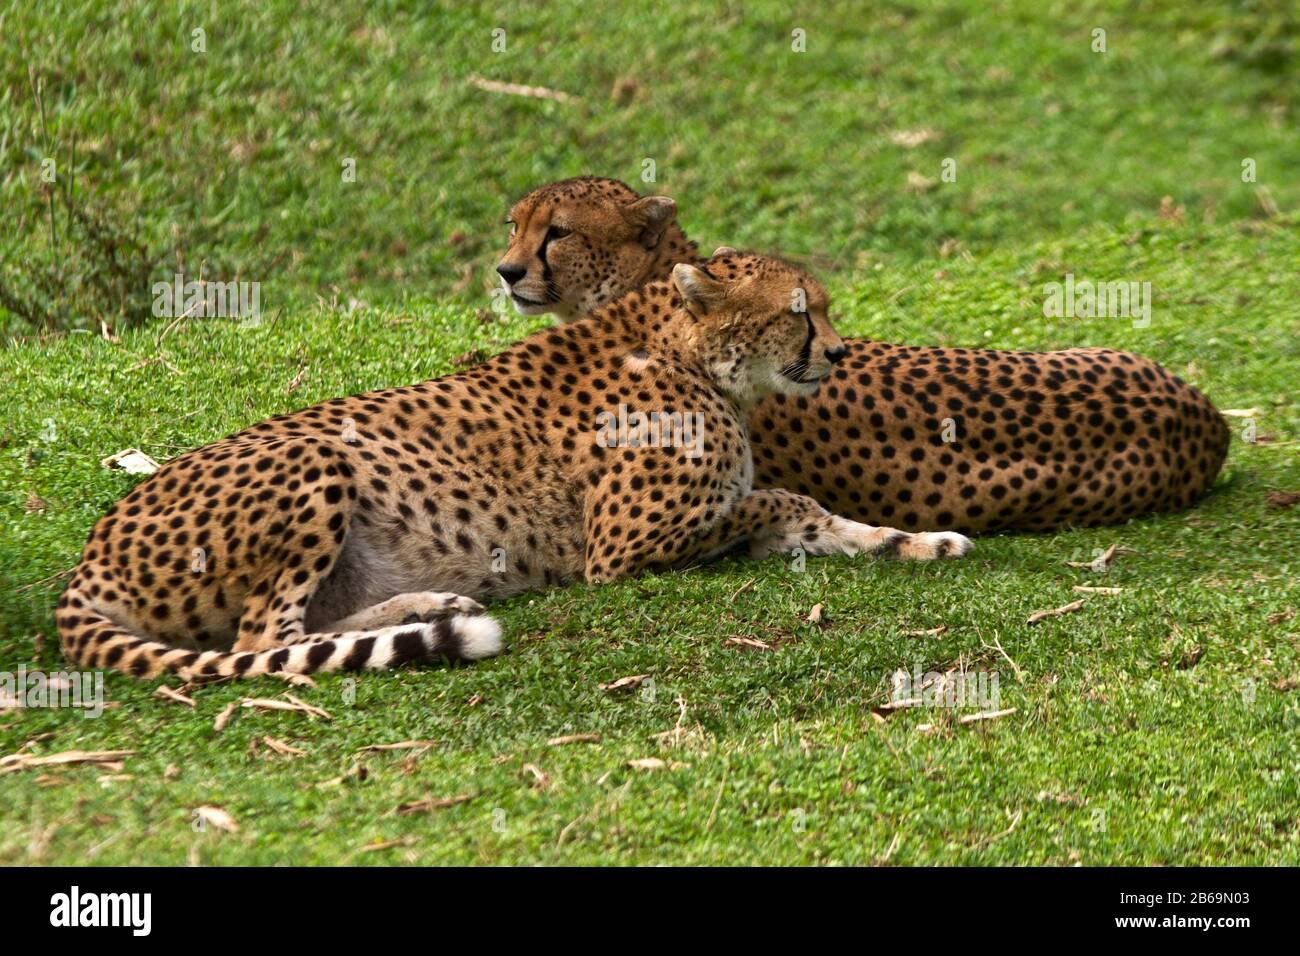 Los hermanos Cheetah a menudo permanecen en coaliciones estrechamente vinculadas a lo largo de sus vidas Foto de stock